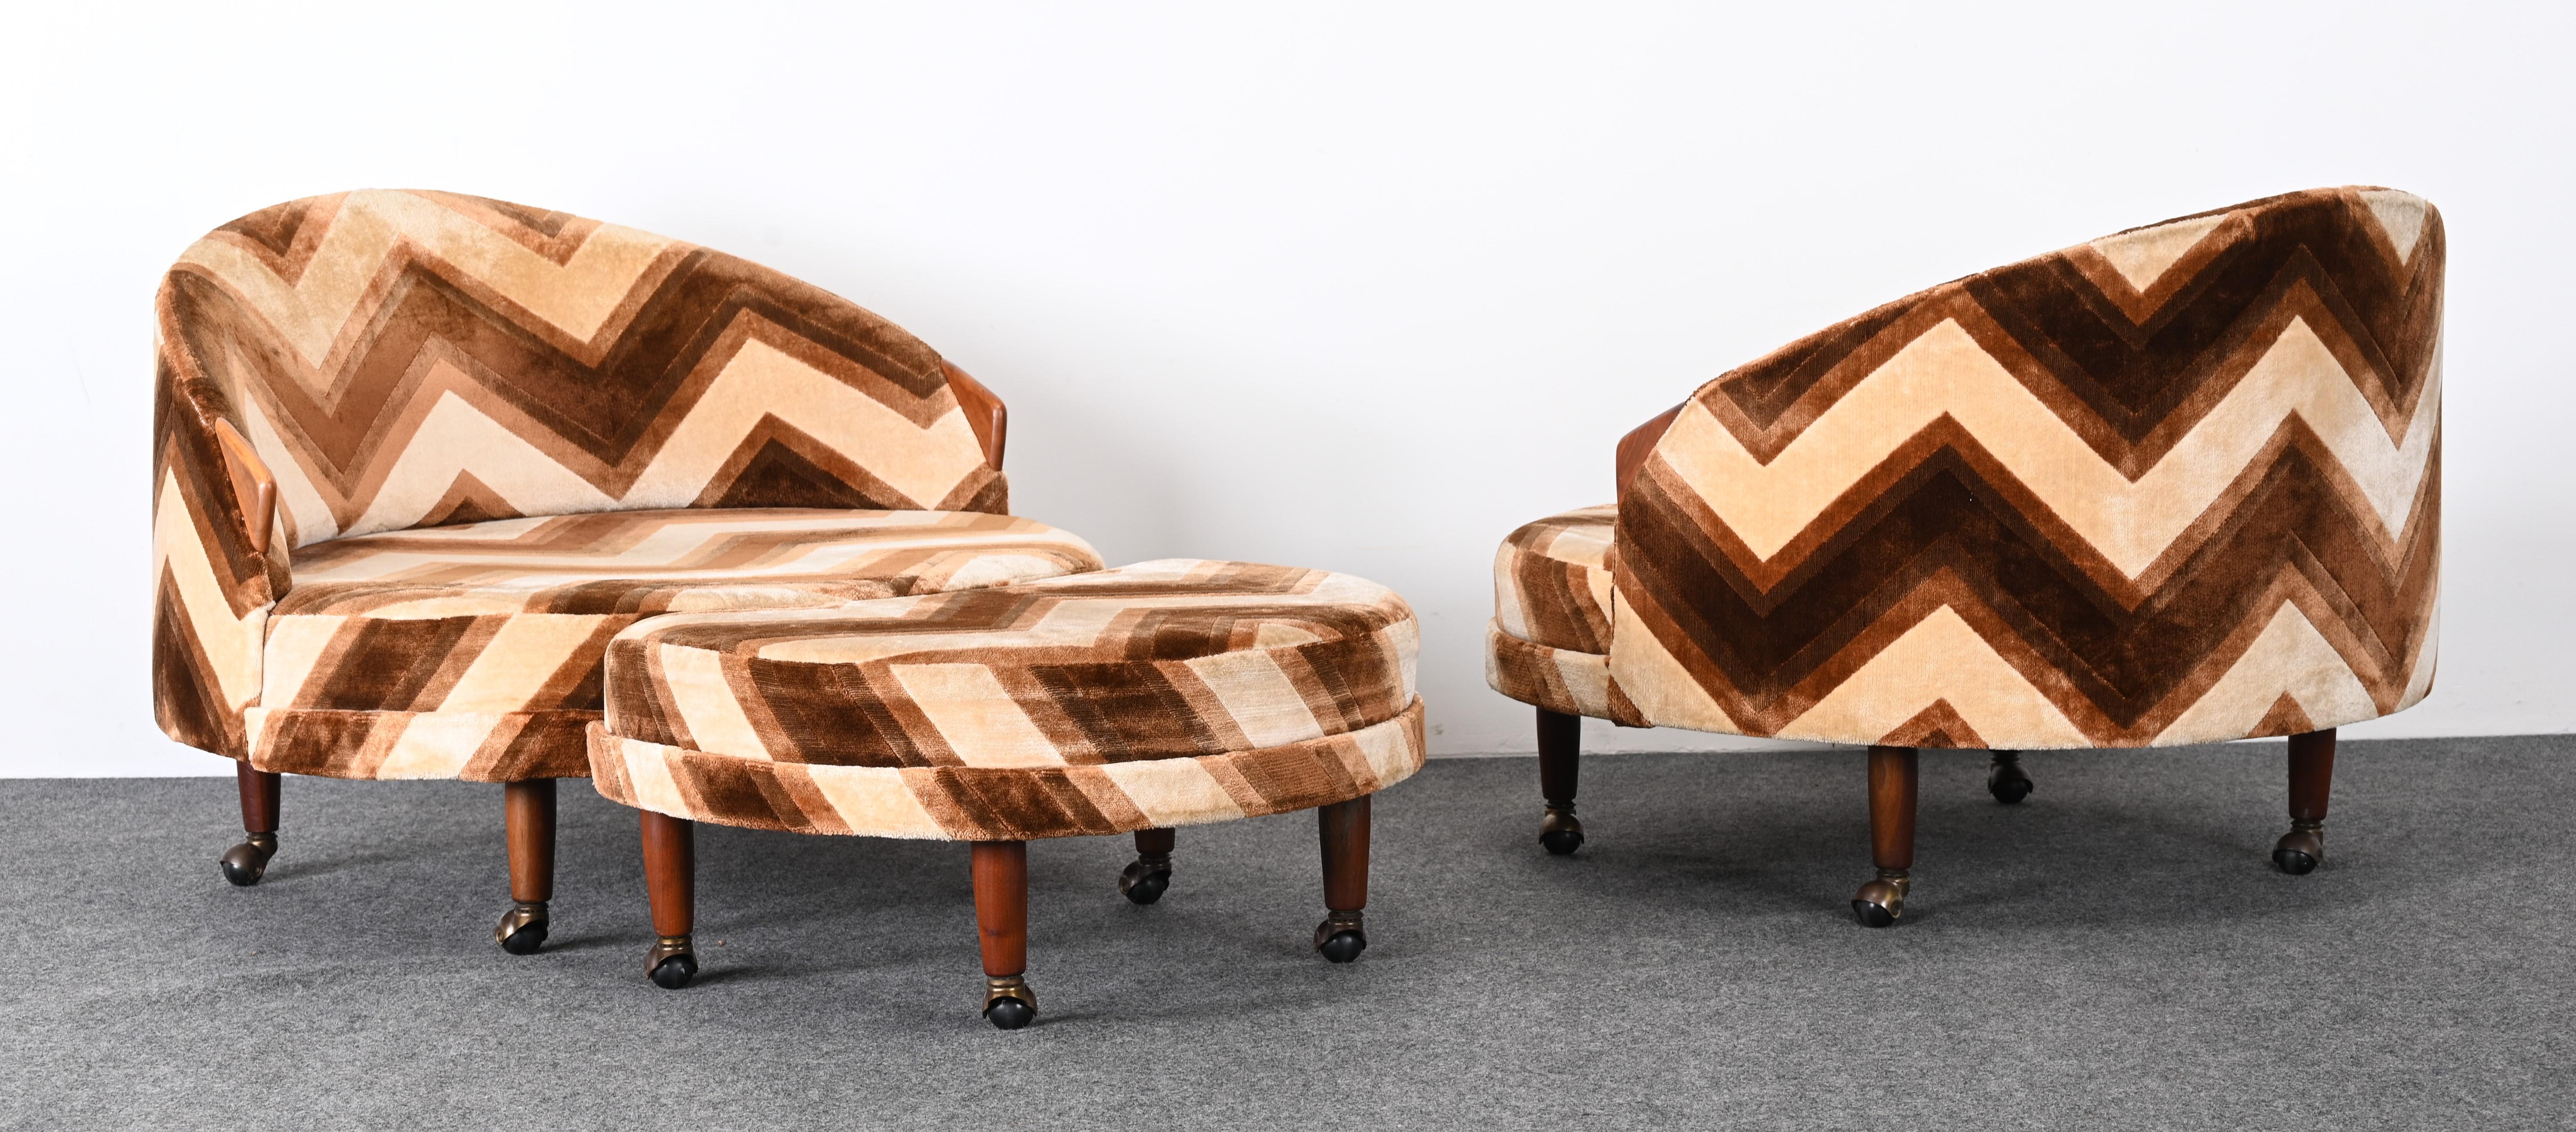 Paire de chaises Adrian By avec ottoman pour Craft Associates, 1965. Le tissu est vintage et a subi une usure appropriée à son âge. Une nouvelle tapisserie est recommandée. La chaise classique Havana d'Adrian Pearsall présente quelques traces